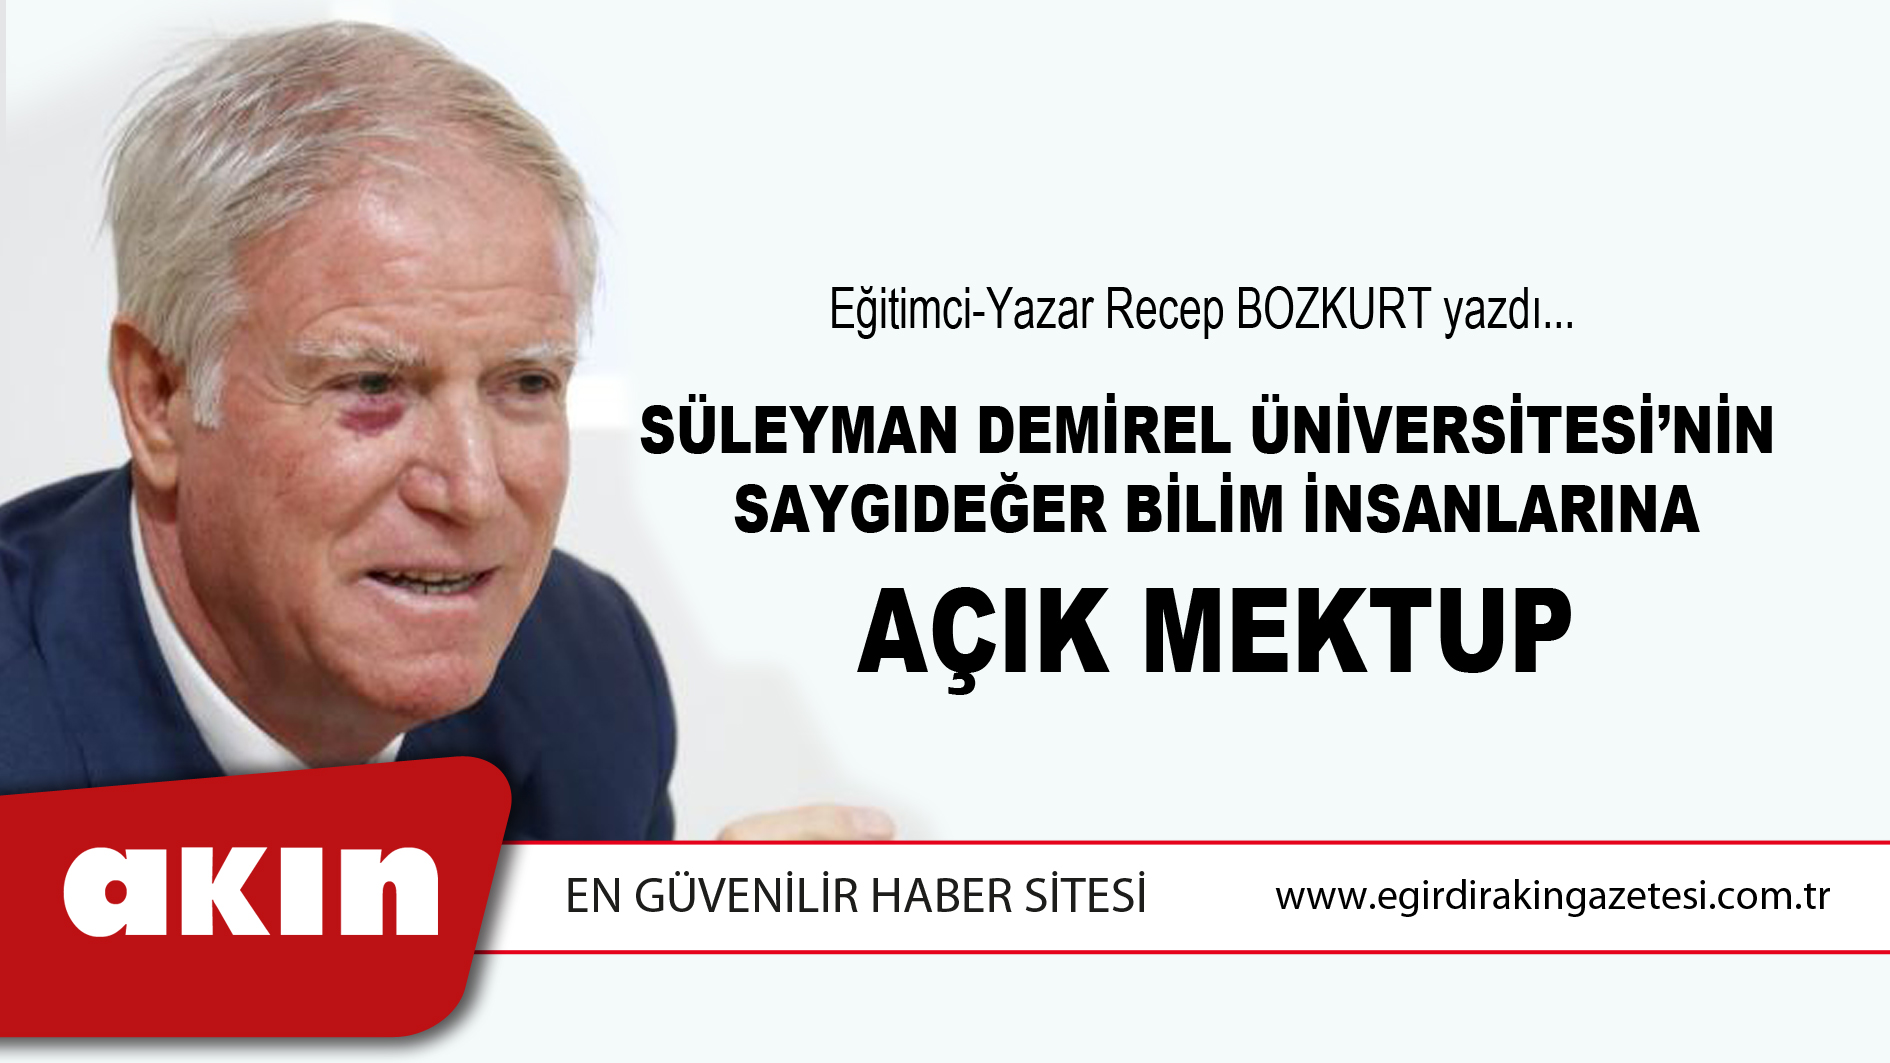 Süleyman Demirel Üniversitesi’nin Saygıdeğer Bilim İnsanlarına Açık Mektup